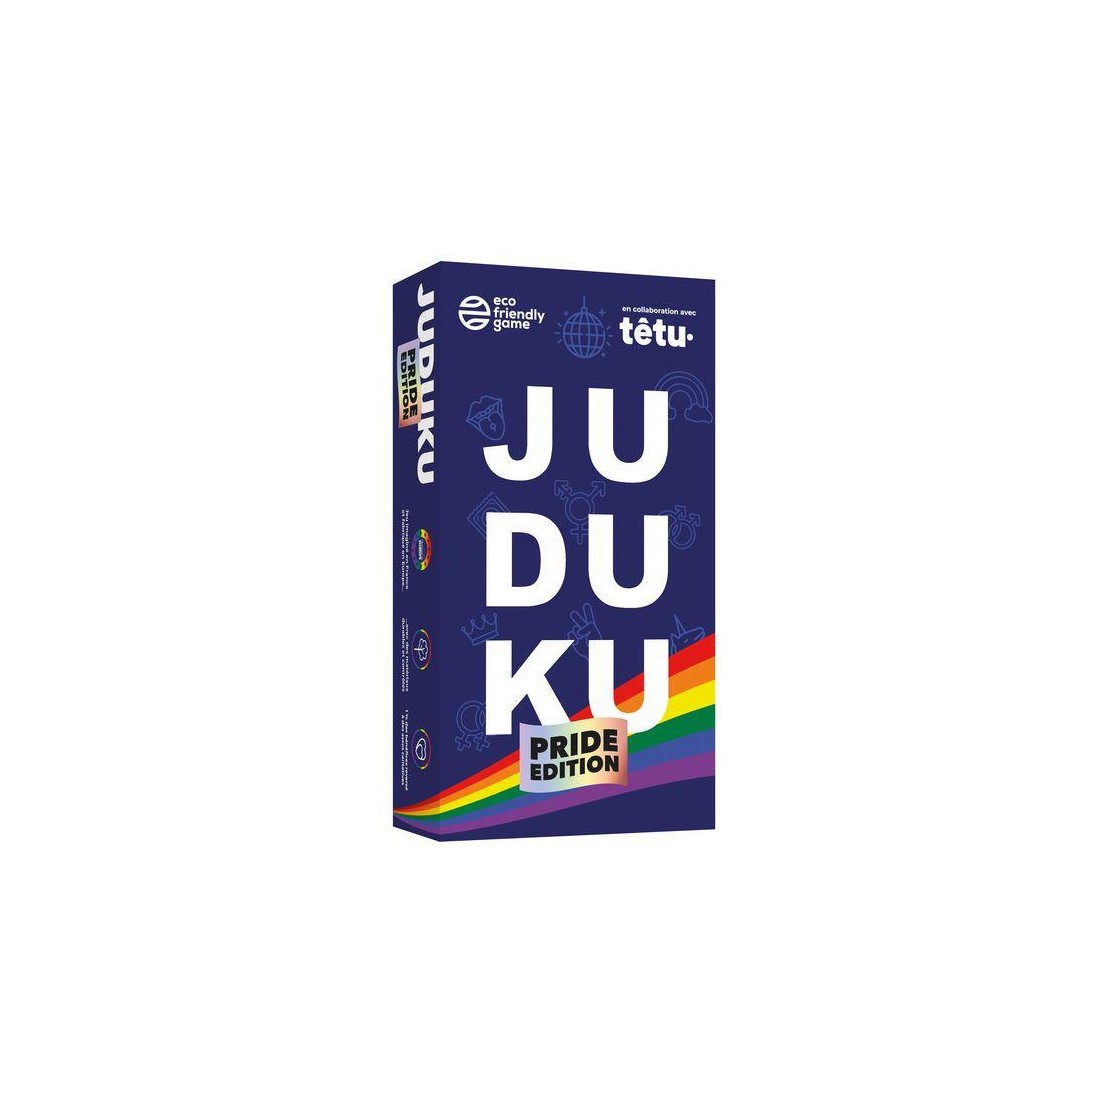 Juduku - Pride Edition - Version Française